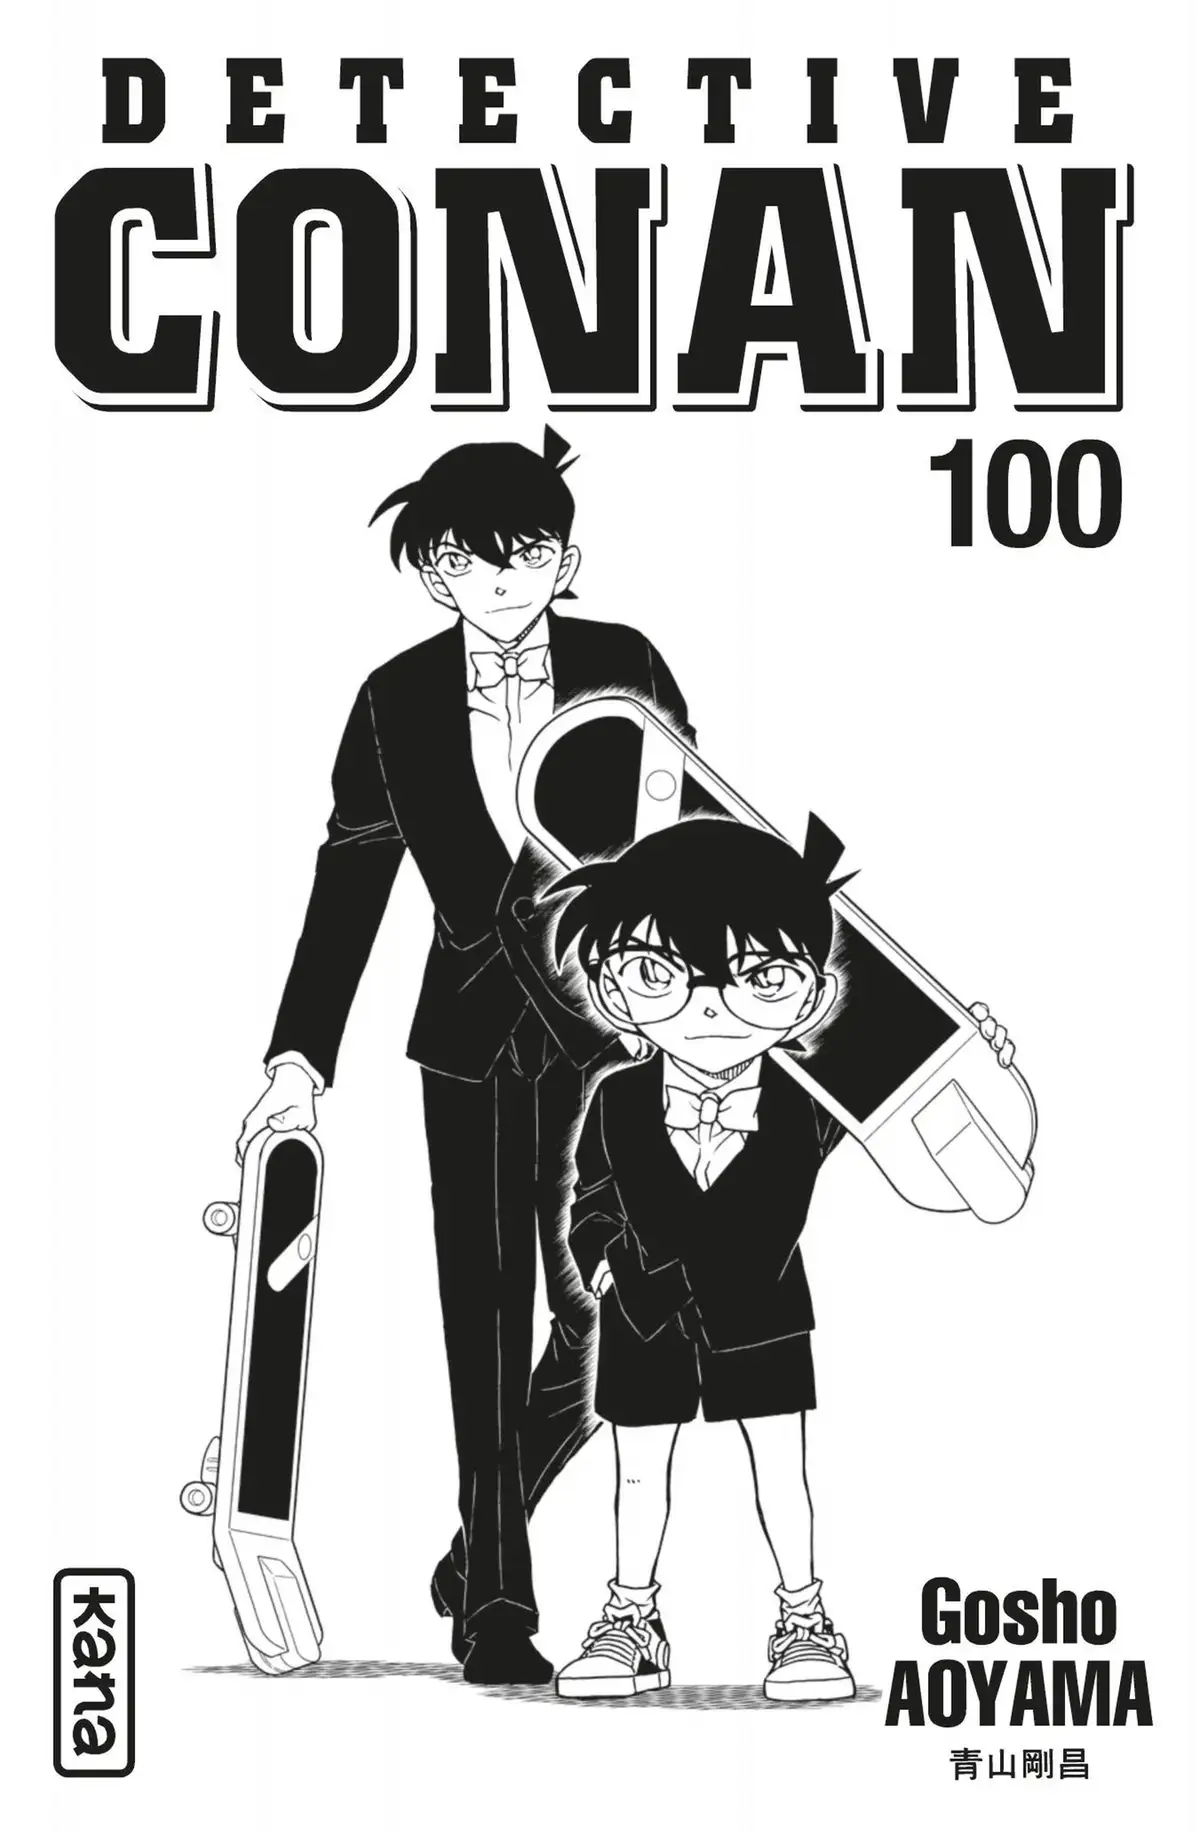 Détective Conan Volume 100 page 2